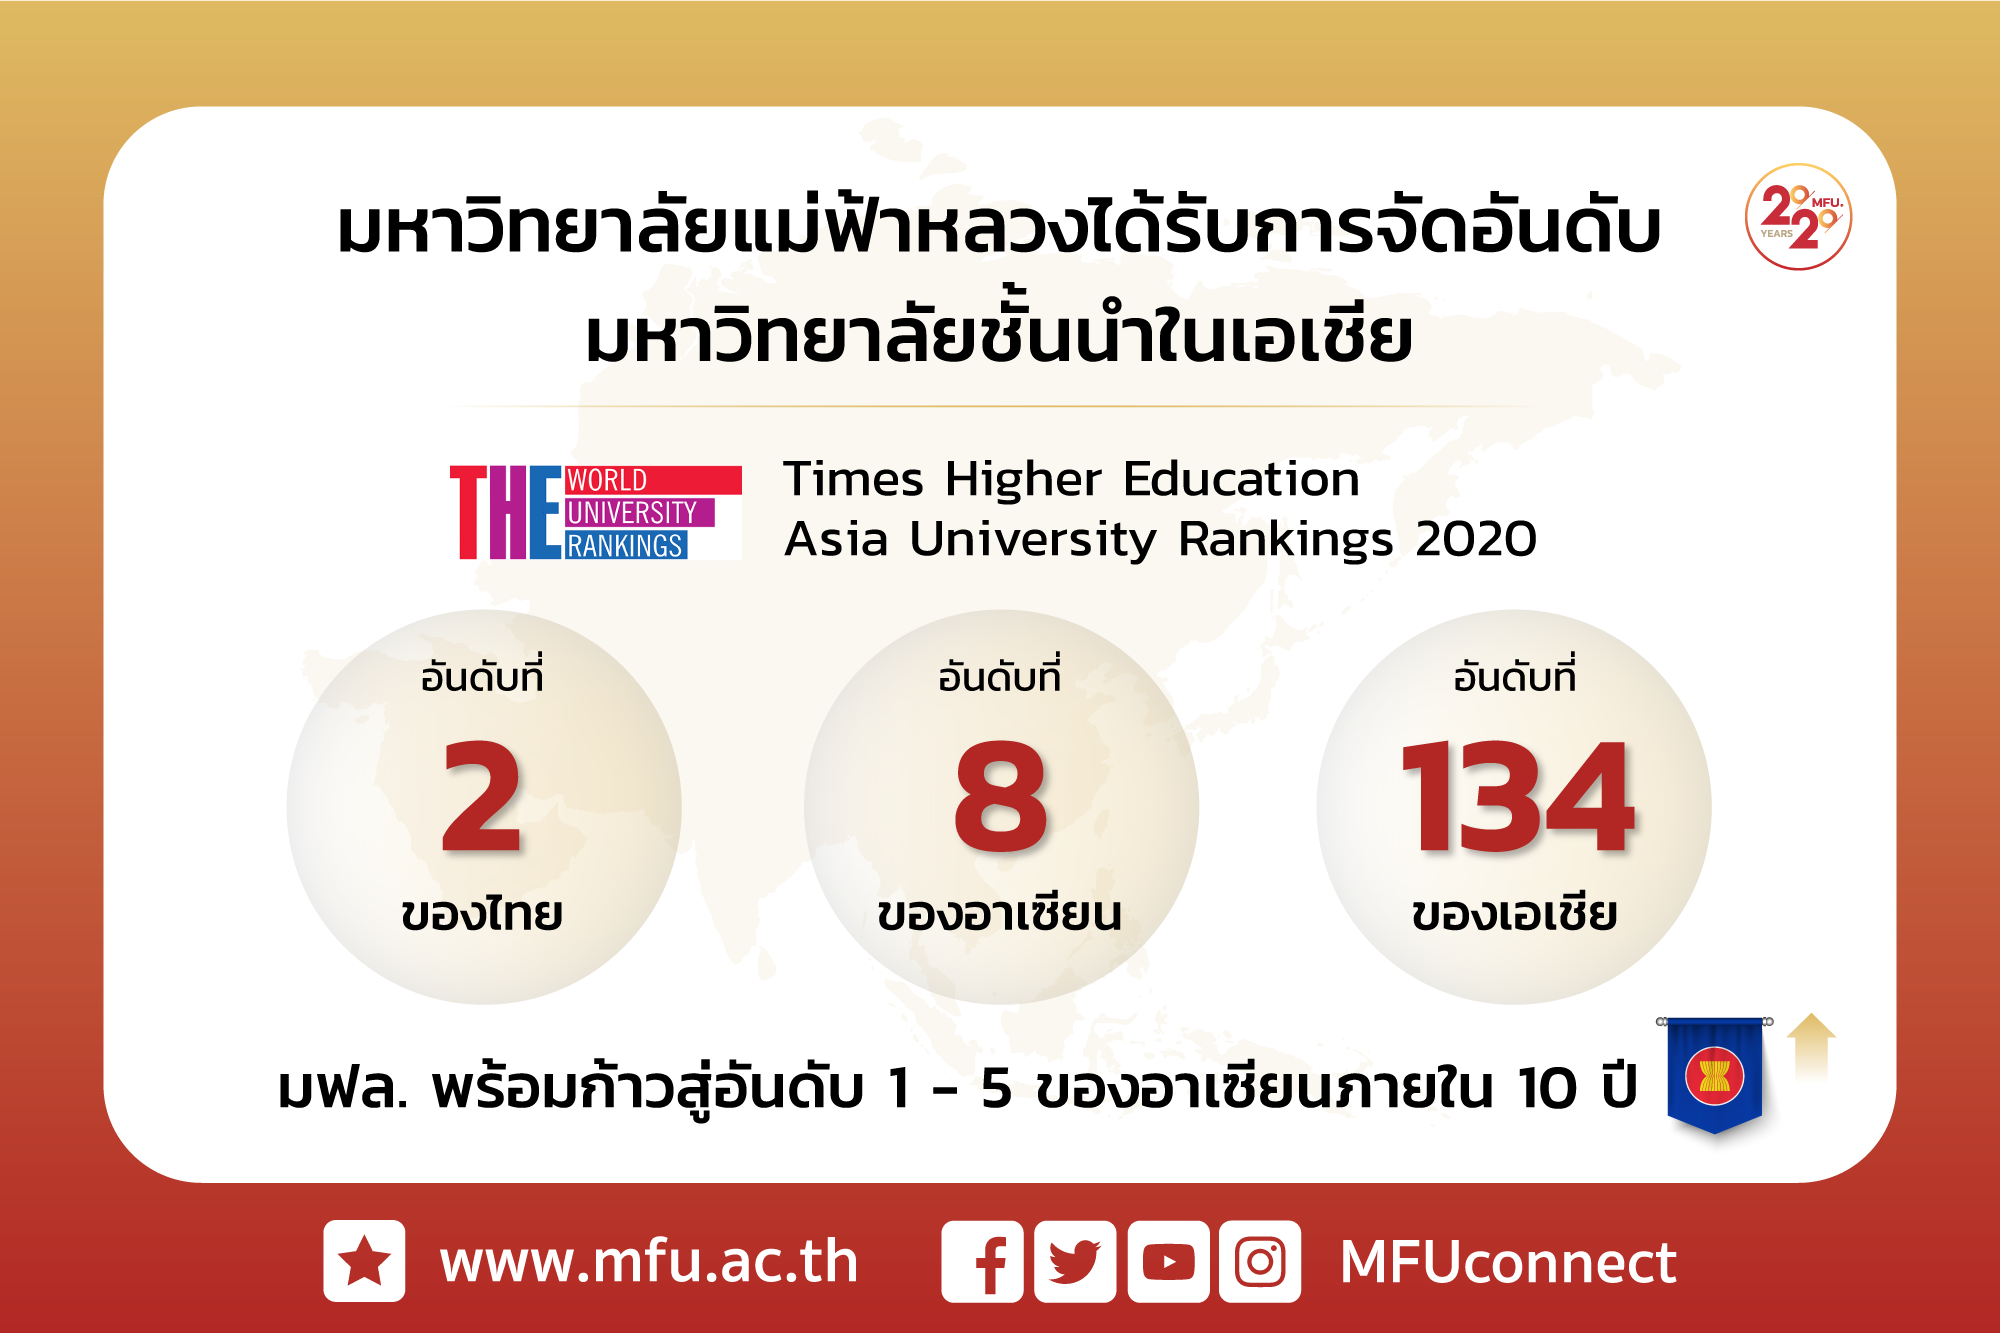 มฟล. ได้รับจัดอันดับมหาวิทยาลัยชั้นนำในเอเชียจาก Times Higher Education Asia University Rankings 2020